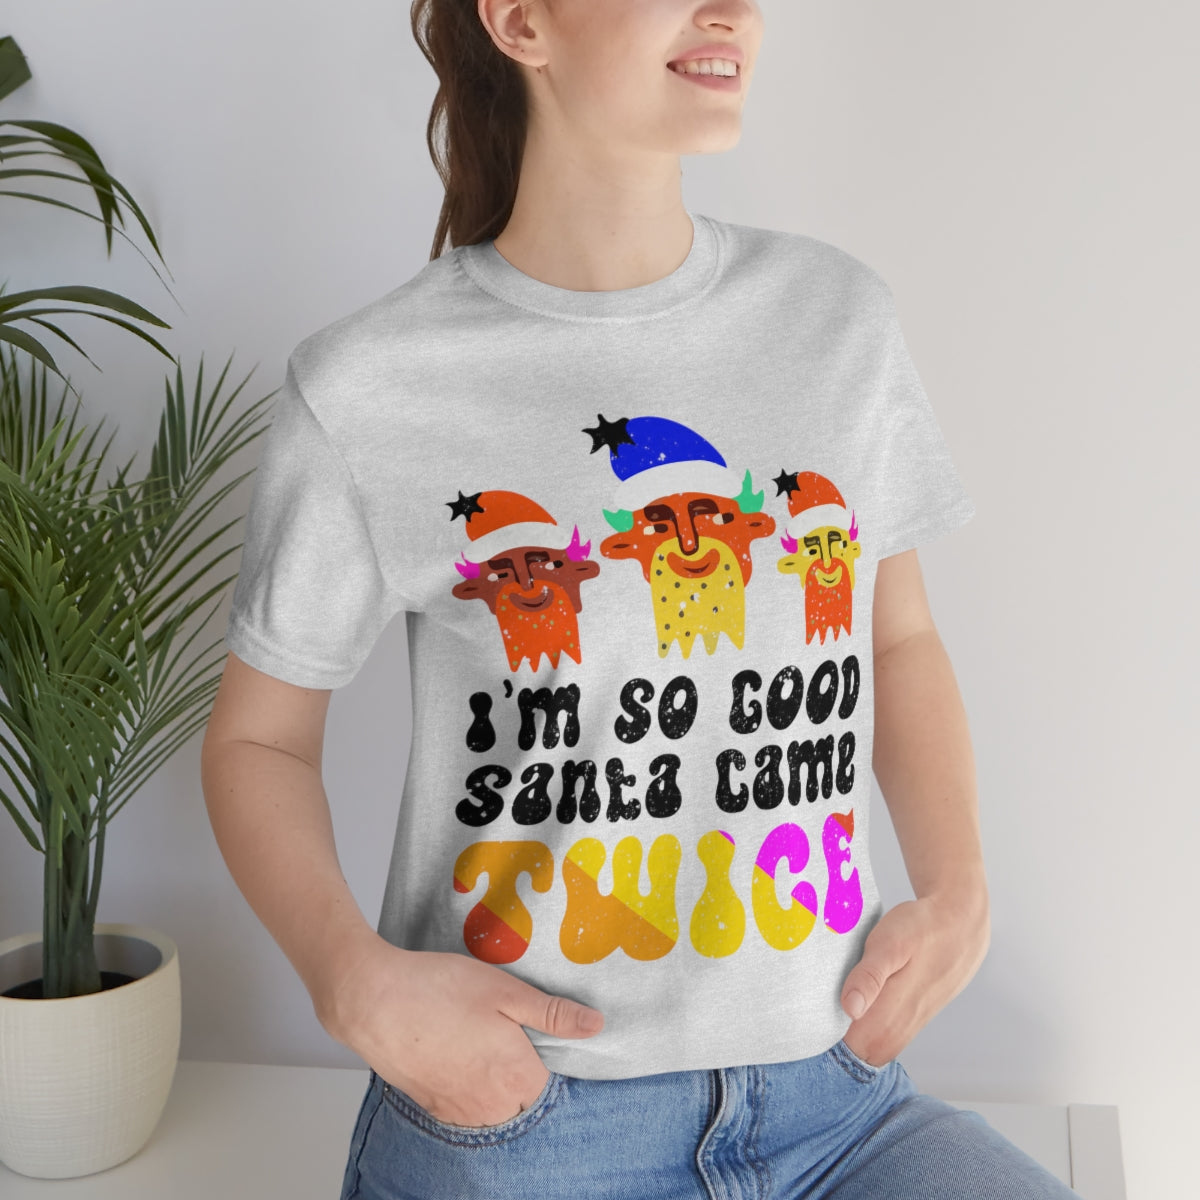 Classic Unisex Christmas LGBTQ T-Shirt - I’M So Good Santa Came Twice Printify